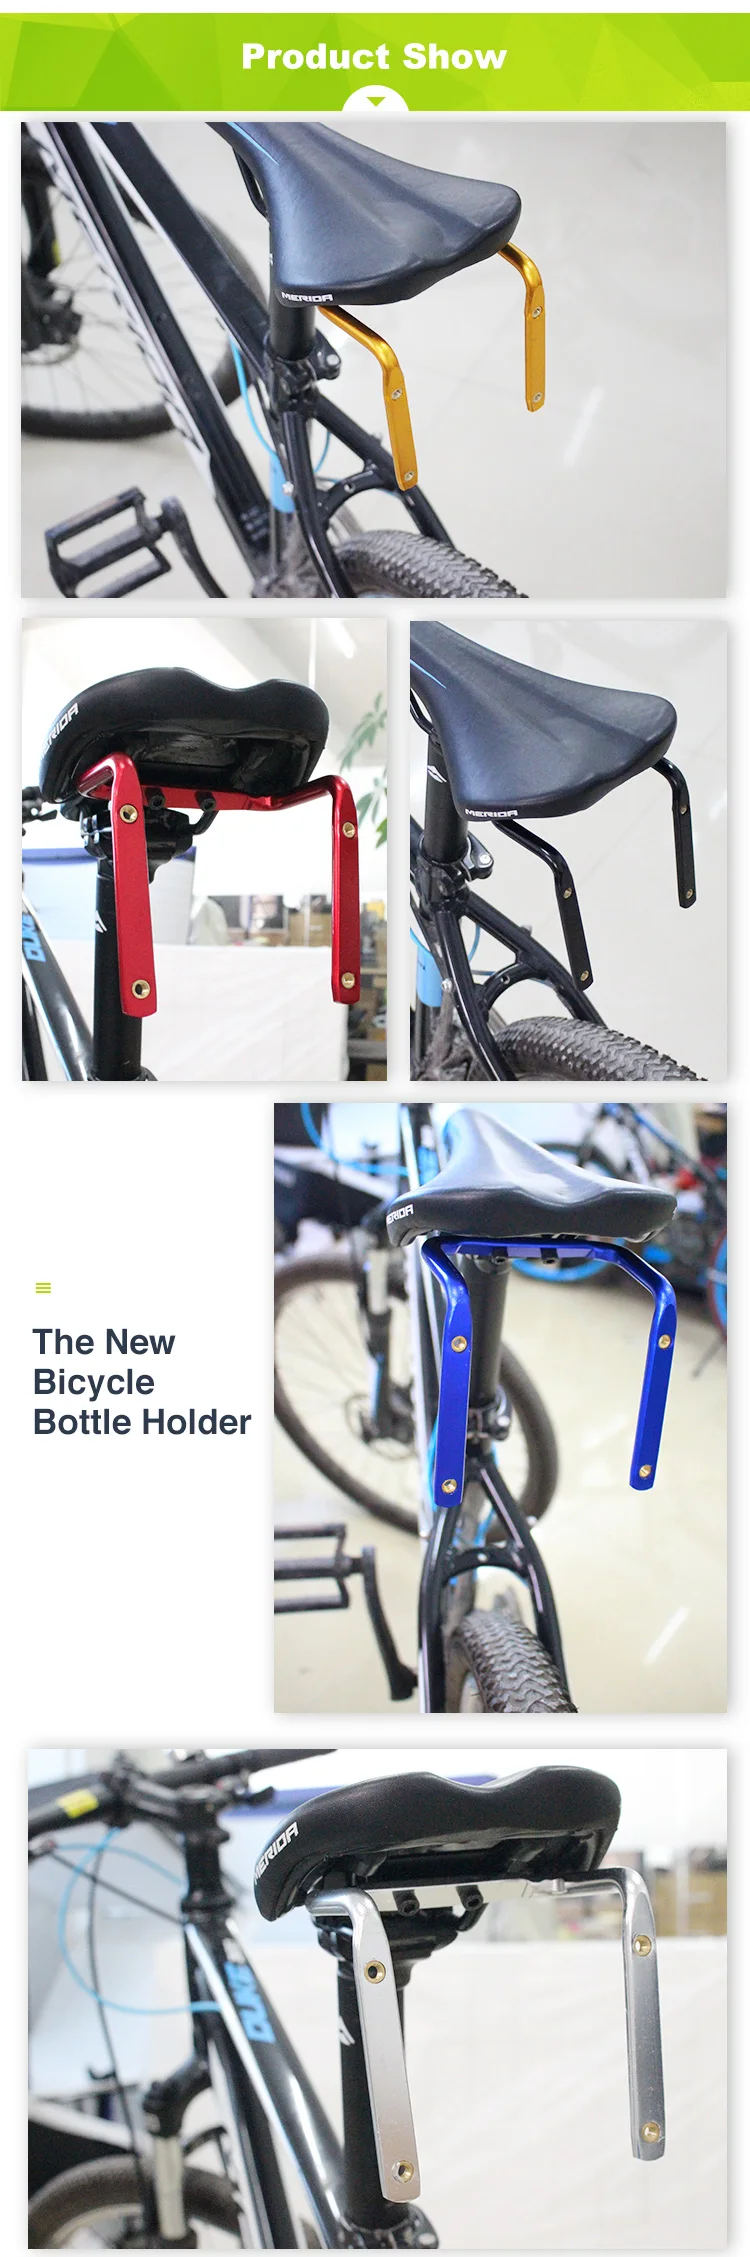 PCycling держатель для велосипедной бутылки конвертер для велосипеда алюминиевый сплав заднее крепление седло-рельс кронштейн для 2 бутылки воды Держатель клеток